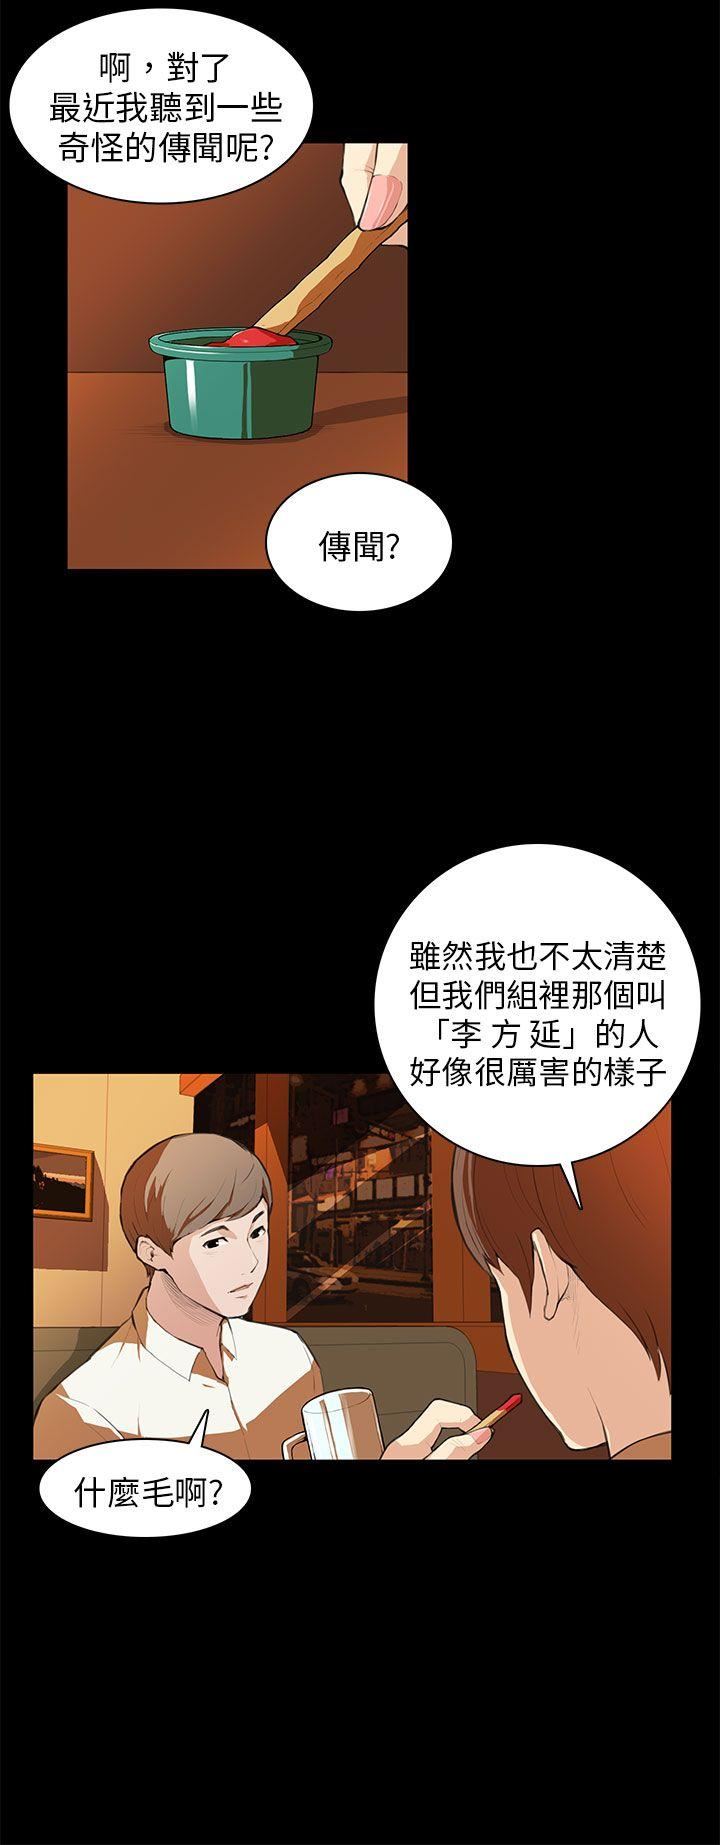 韩国污漫画 斯德哥爾摩癥候群 第7话 10